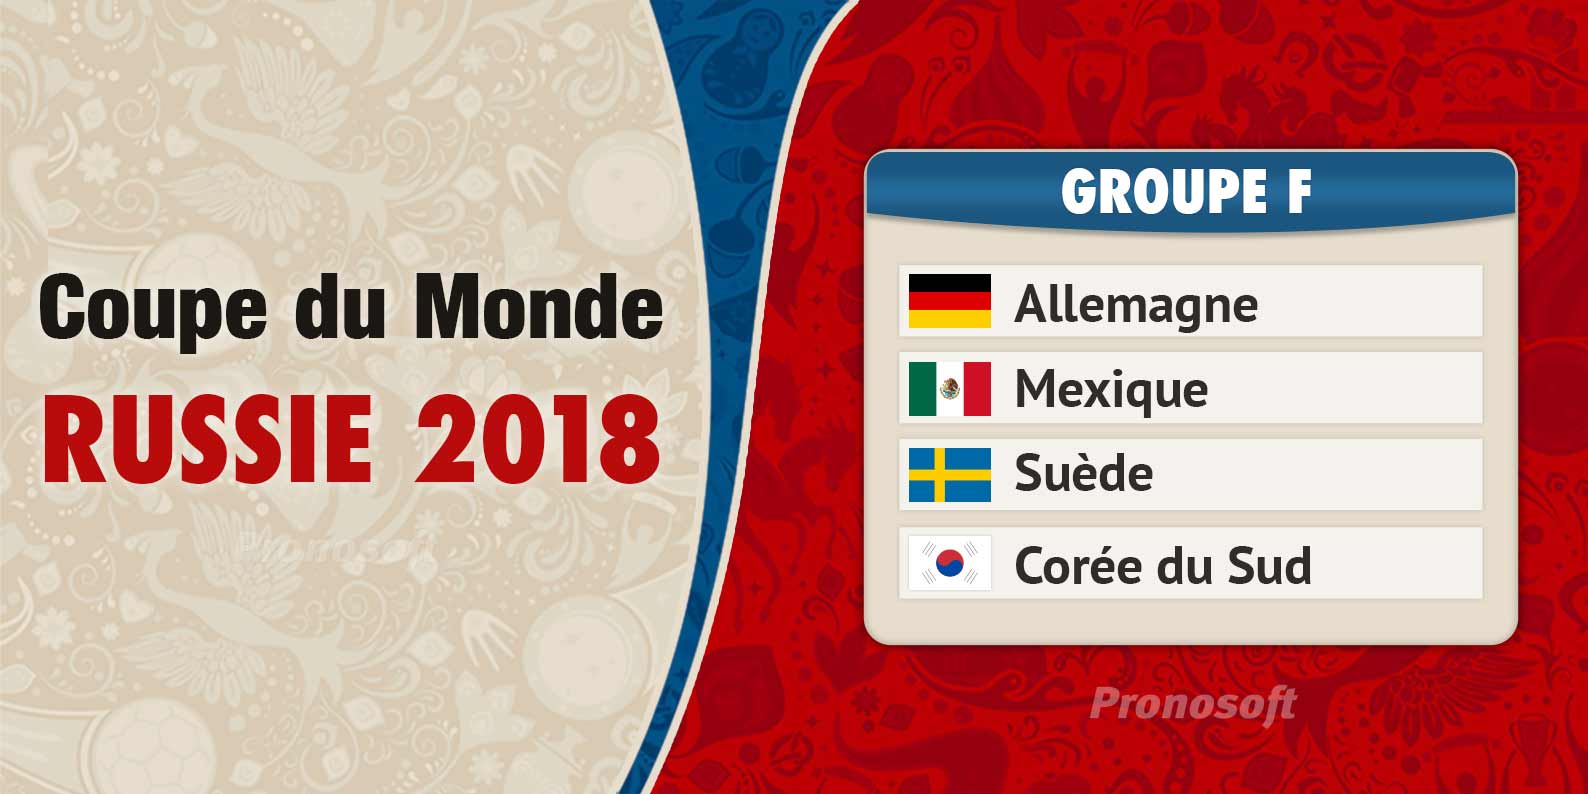 Coupe du Monde en Russie 2018 - Groupe F